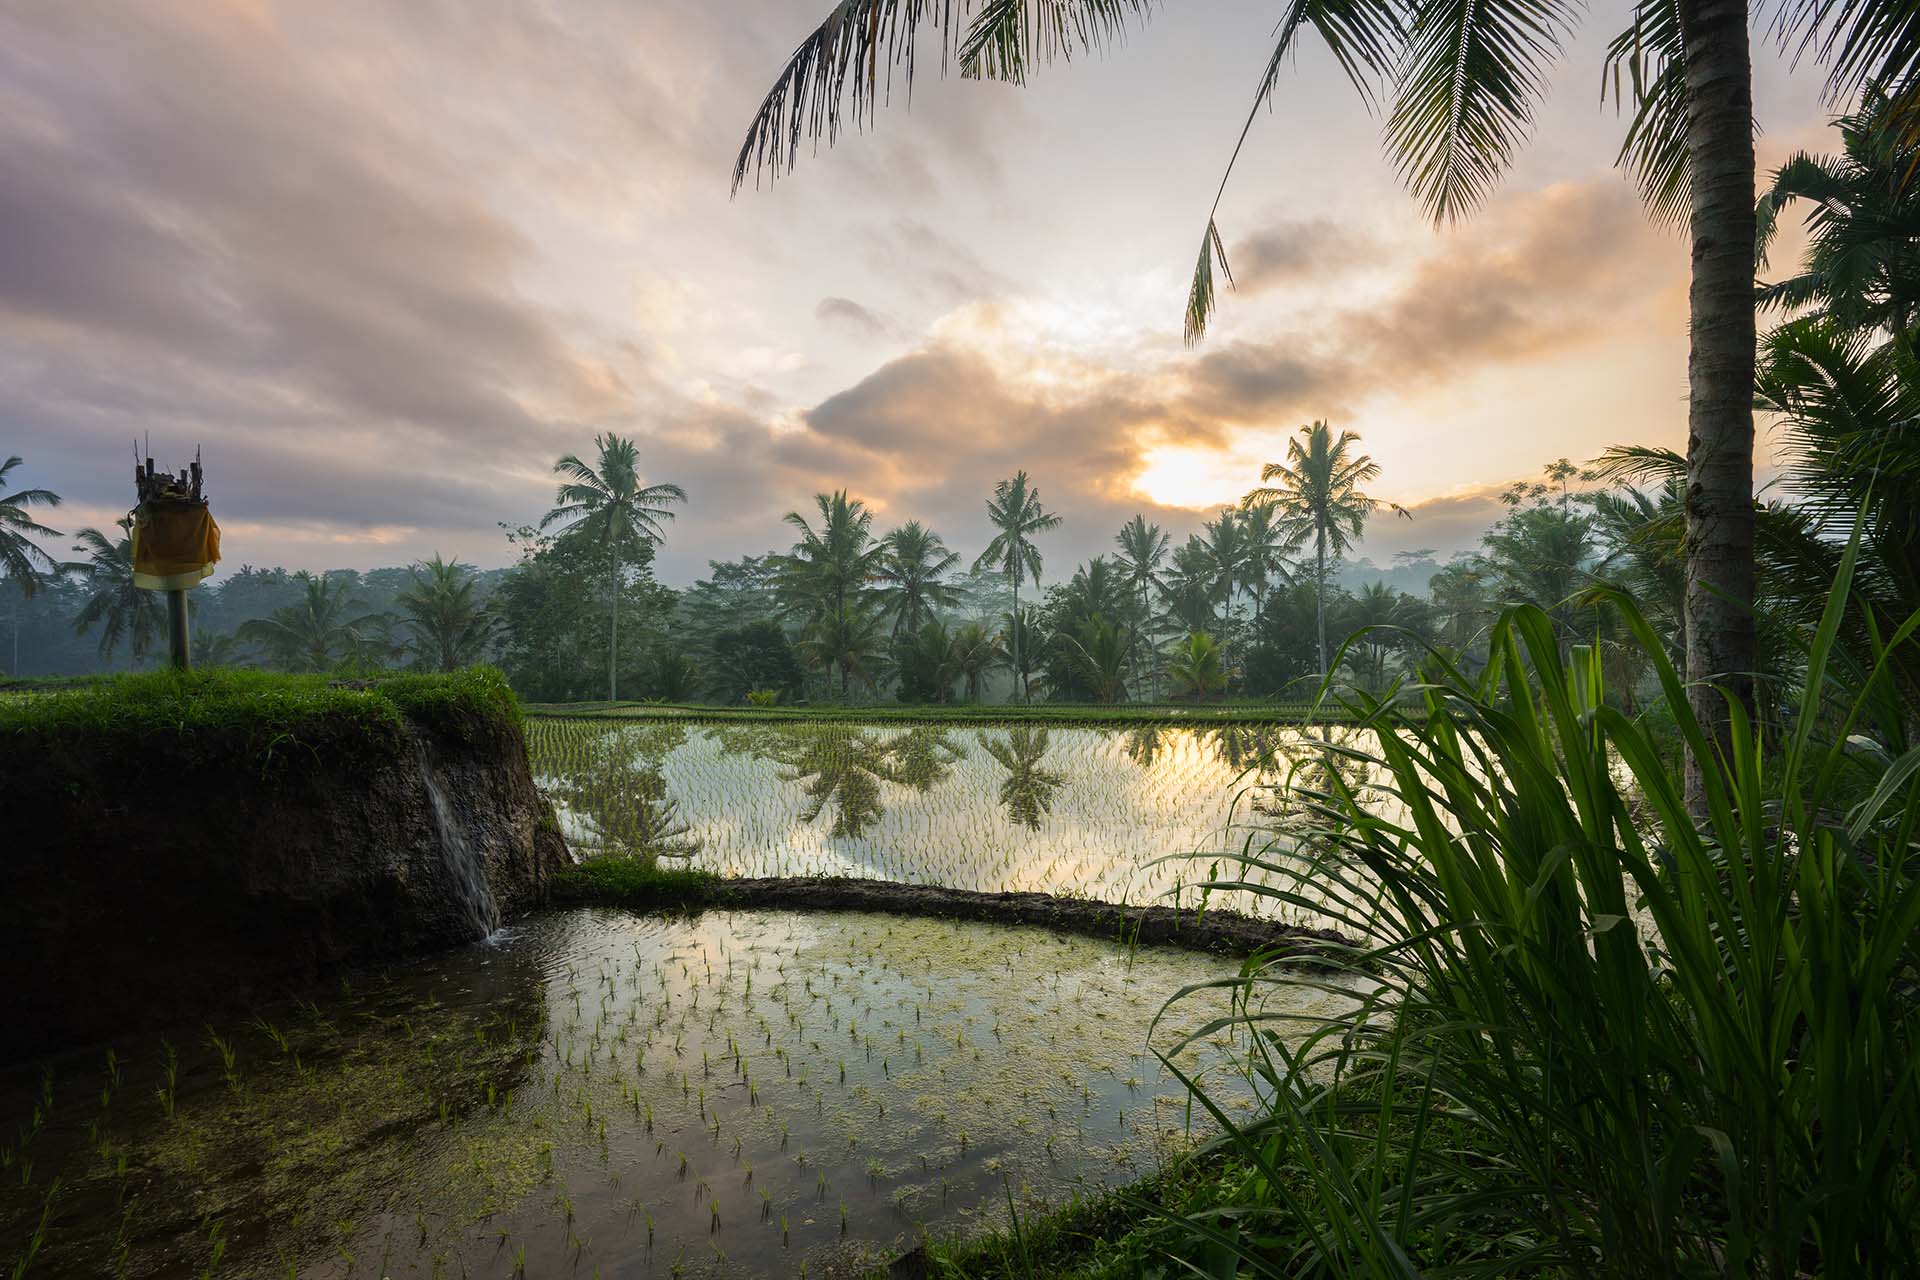 rijstvelden met palmen die weerspiegelen in het water op Bali